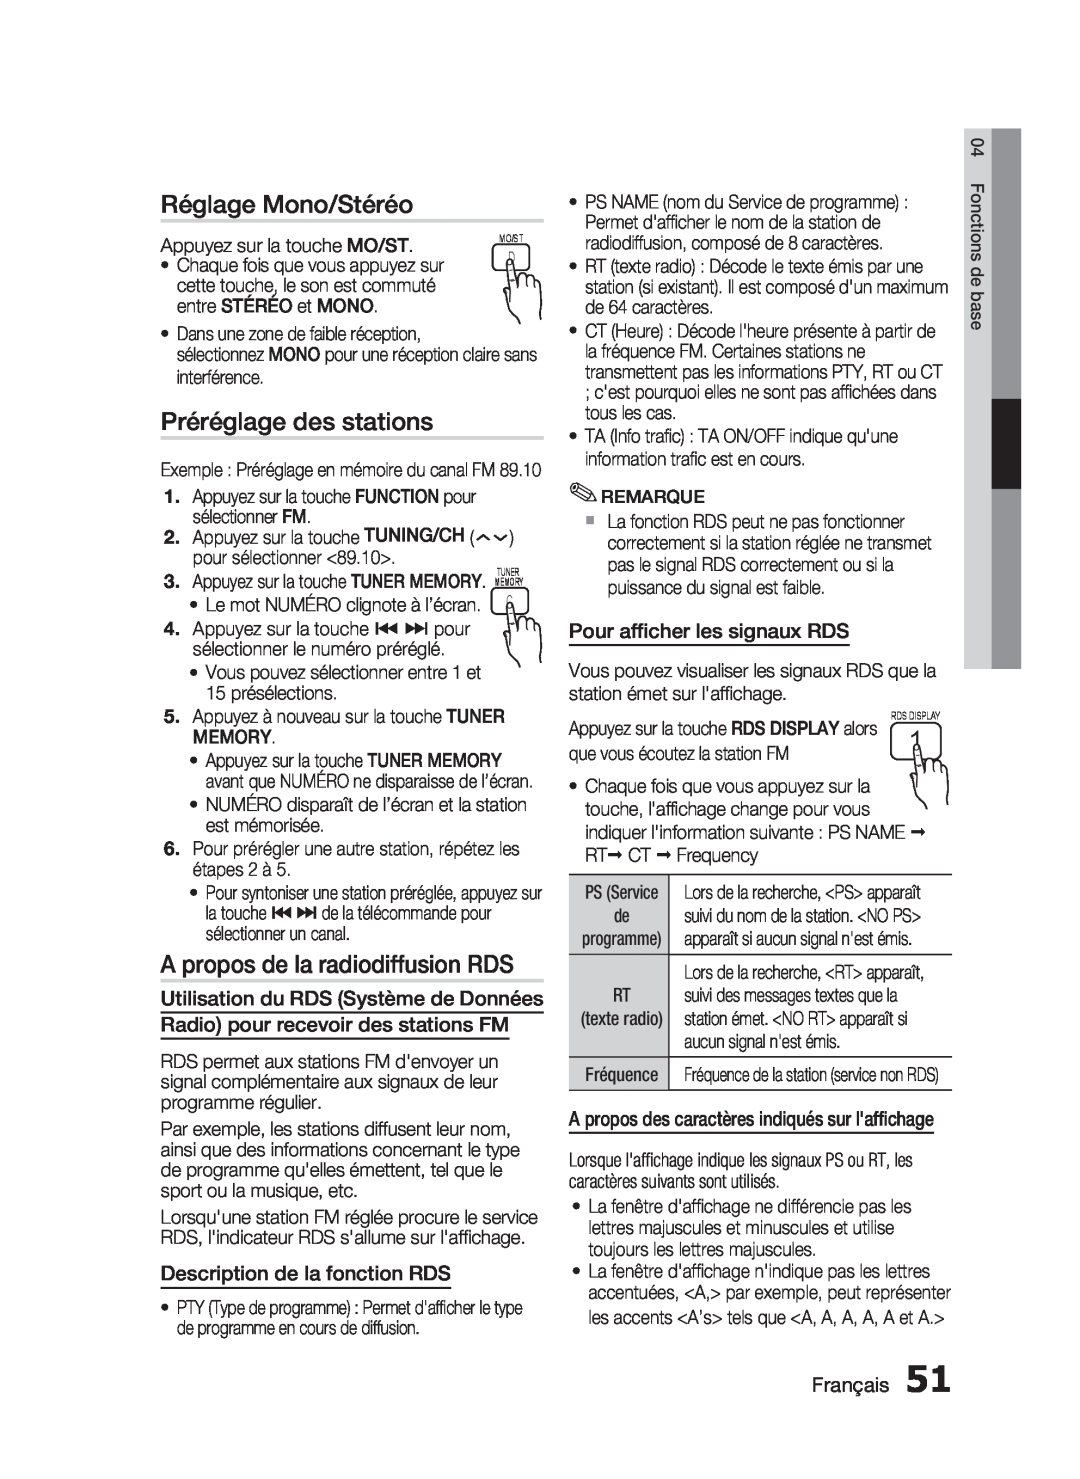 Samsung HT-C6200/XEF manual Réglage Mono/Stéréo, Préréglage des stations, A propos de la radiodiffusion RDS, Français 